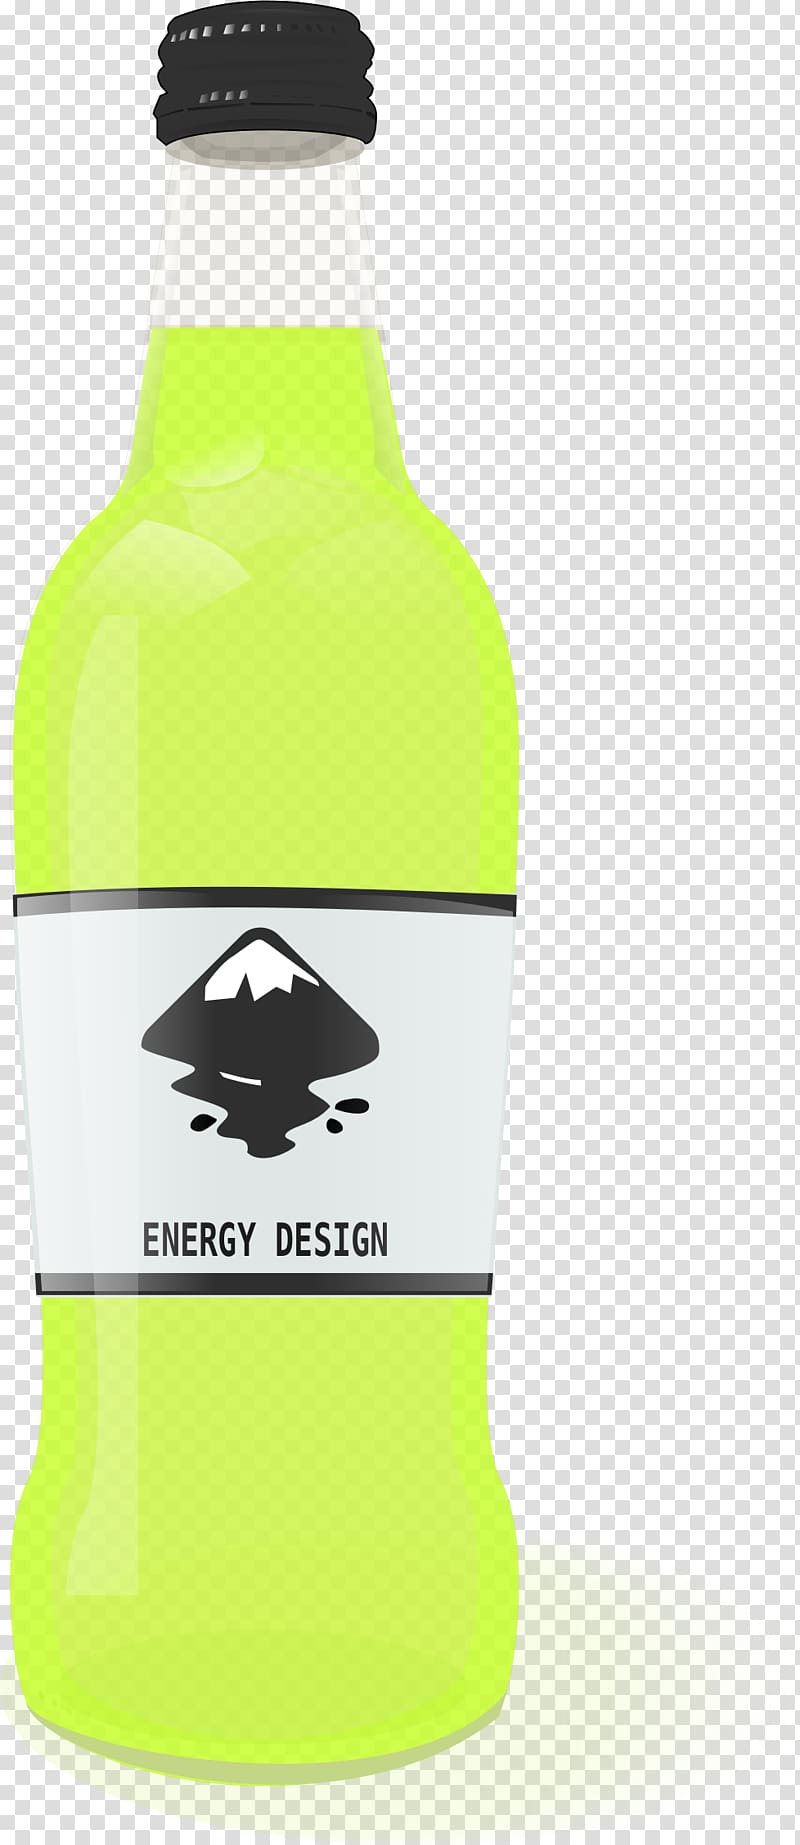 Inkscape PDF, bottle design transparent background PNG clipart